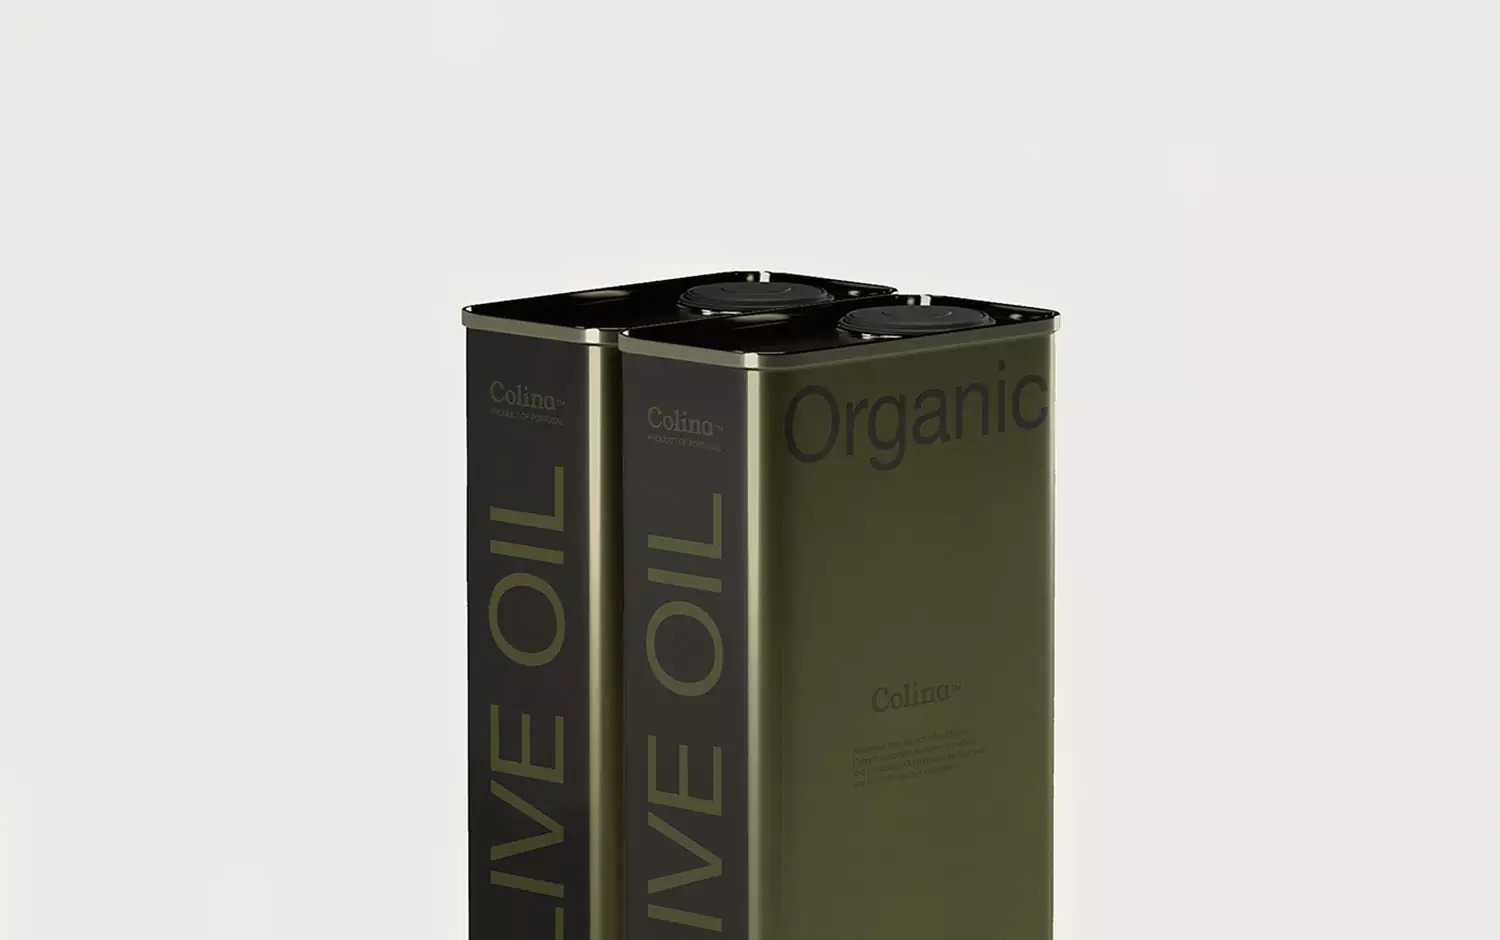 Colina橄榄油品牌设计